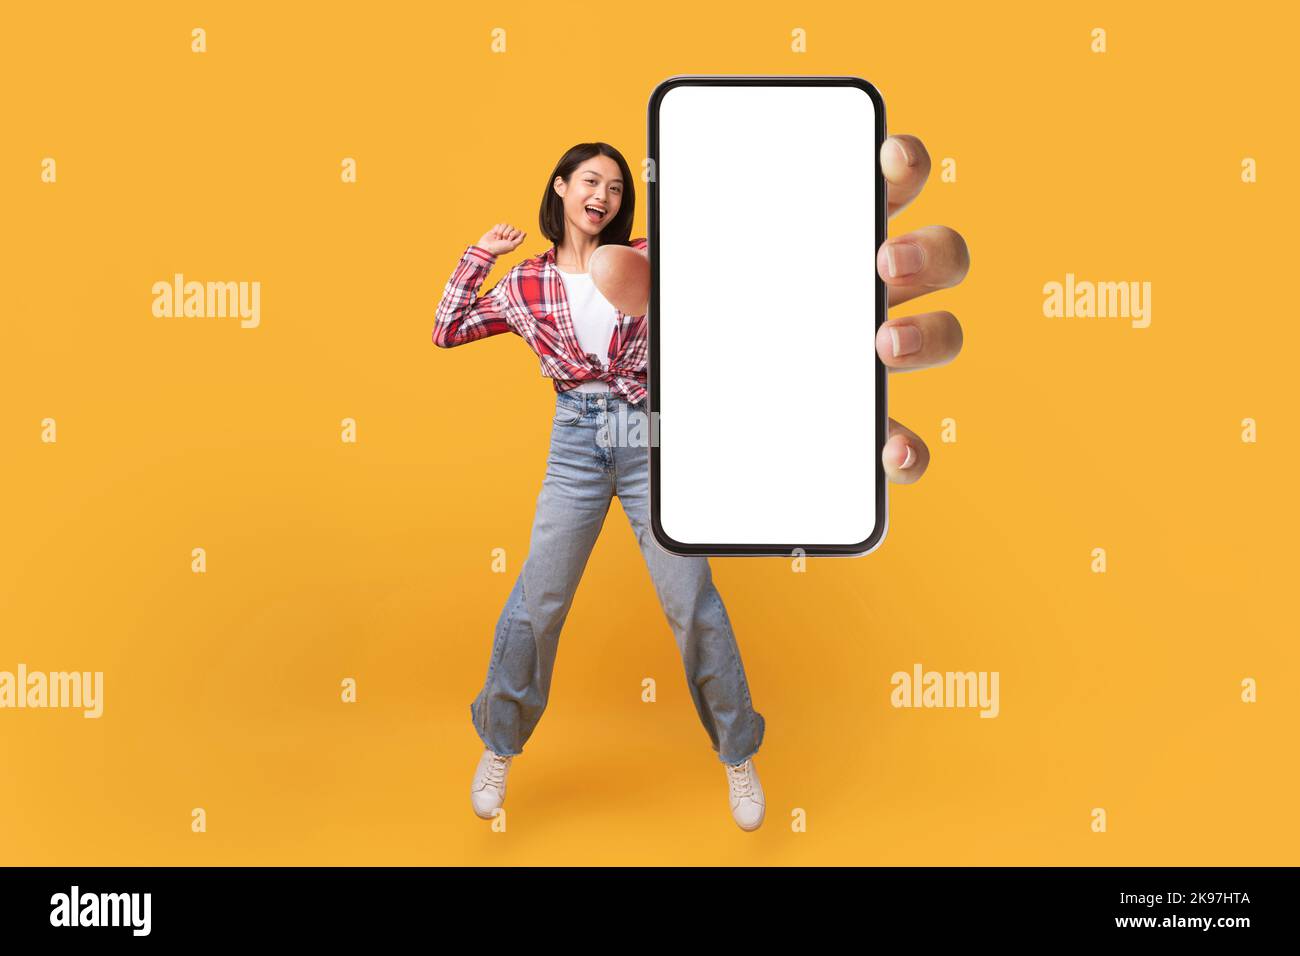 Bonne dame coréenne montrant l'écran vide du smartphone tout en sautant sur fond jaune studio, collage, maquette Banque D'Images